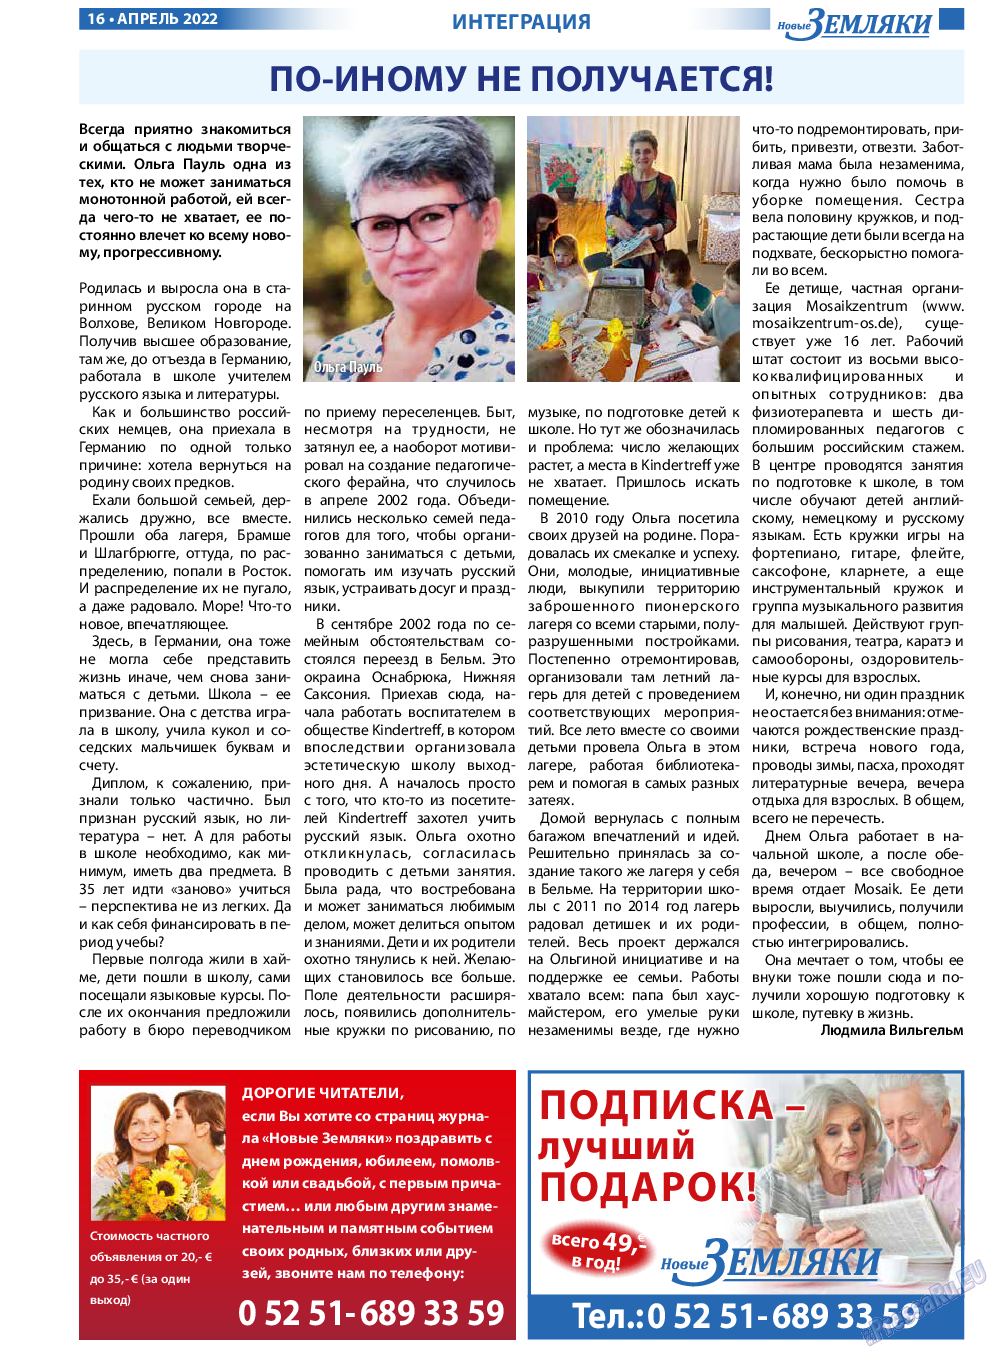 Новые Земляки, газета. 2022 №4 стр.16